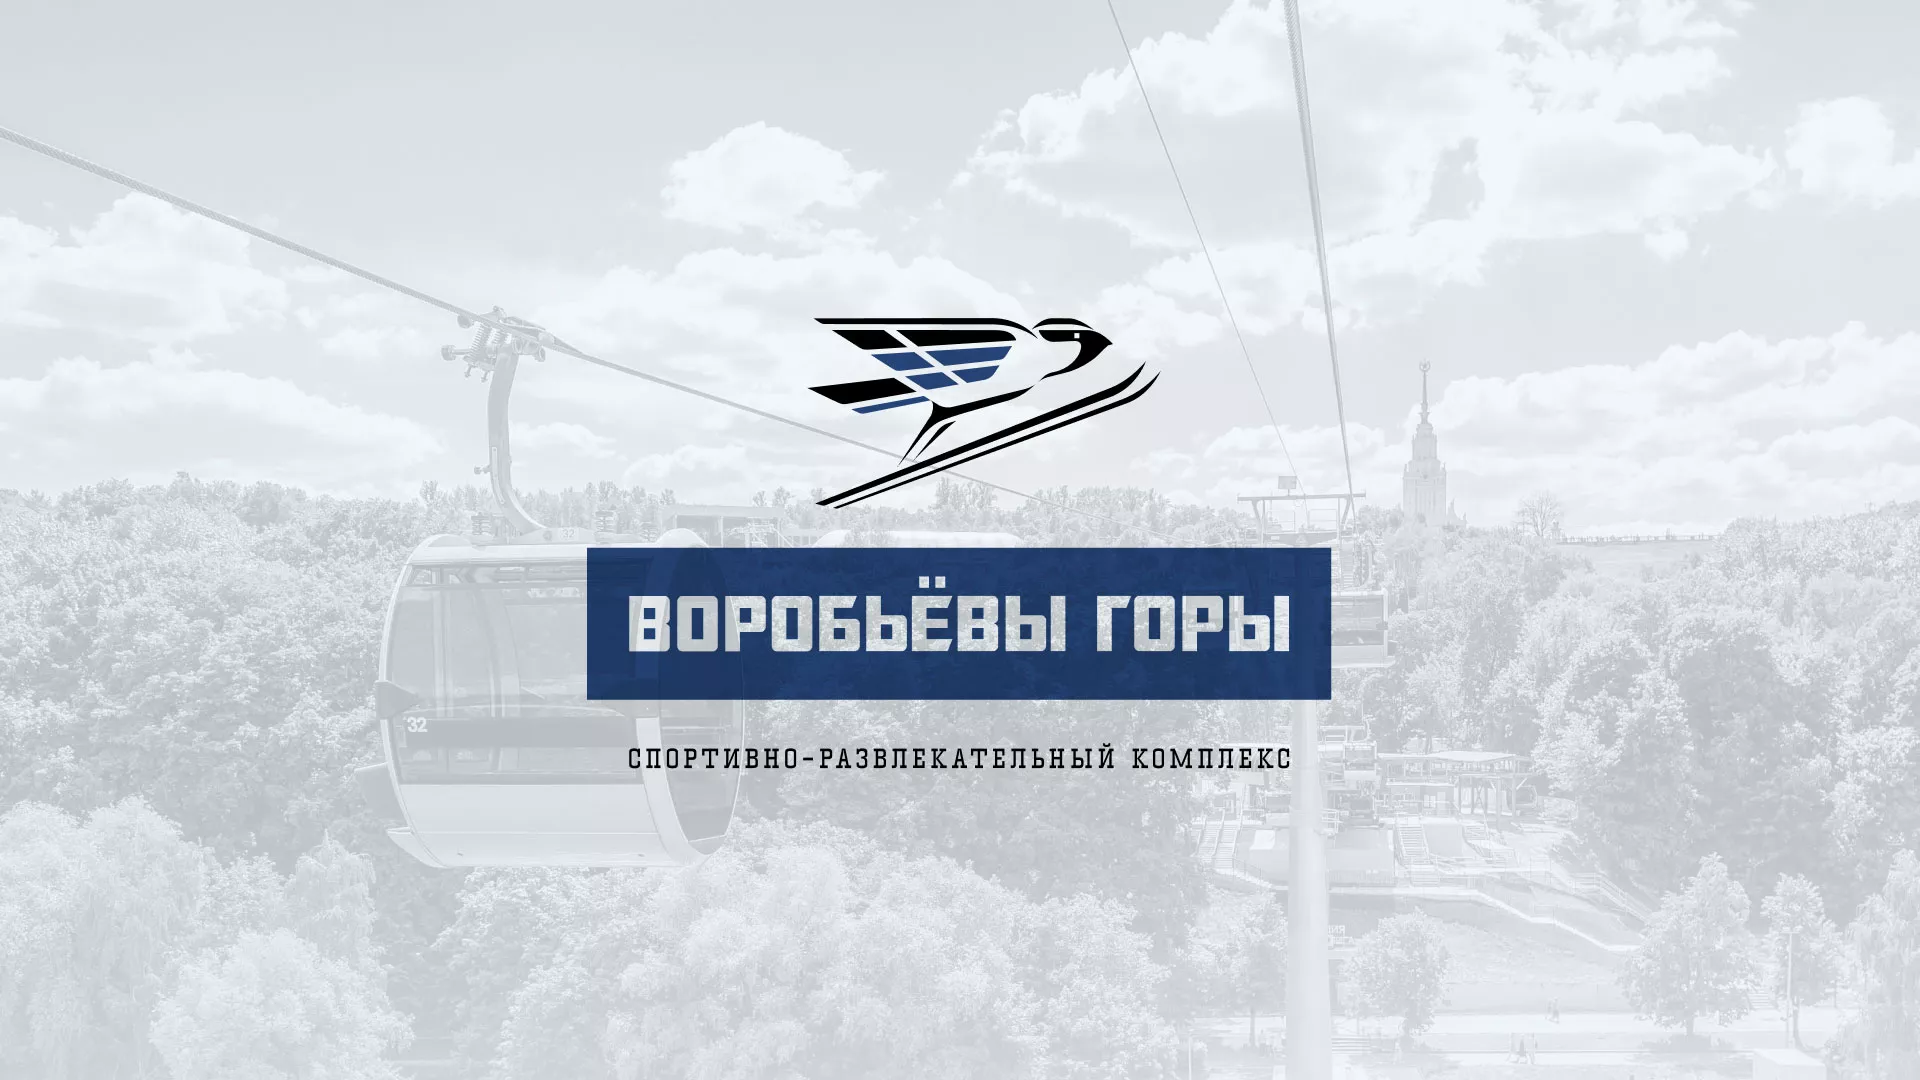 Разработка сайта в Ярославле для спортивно-развлекательного комплекса «Воробьёвы горы»